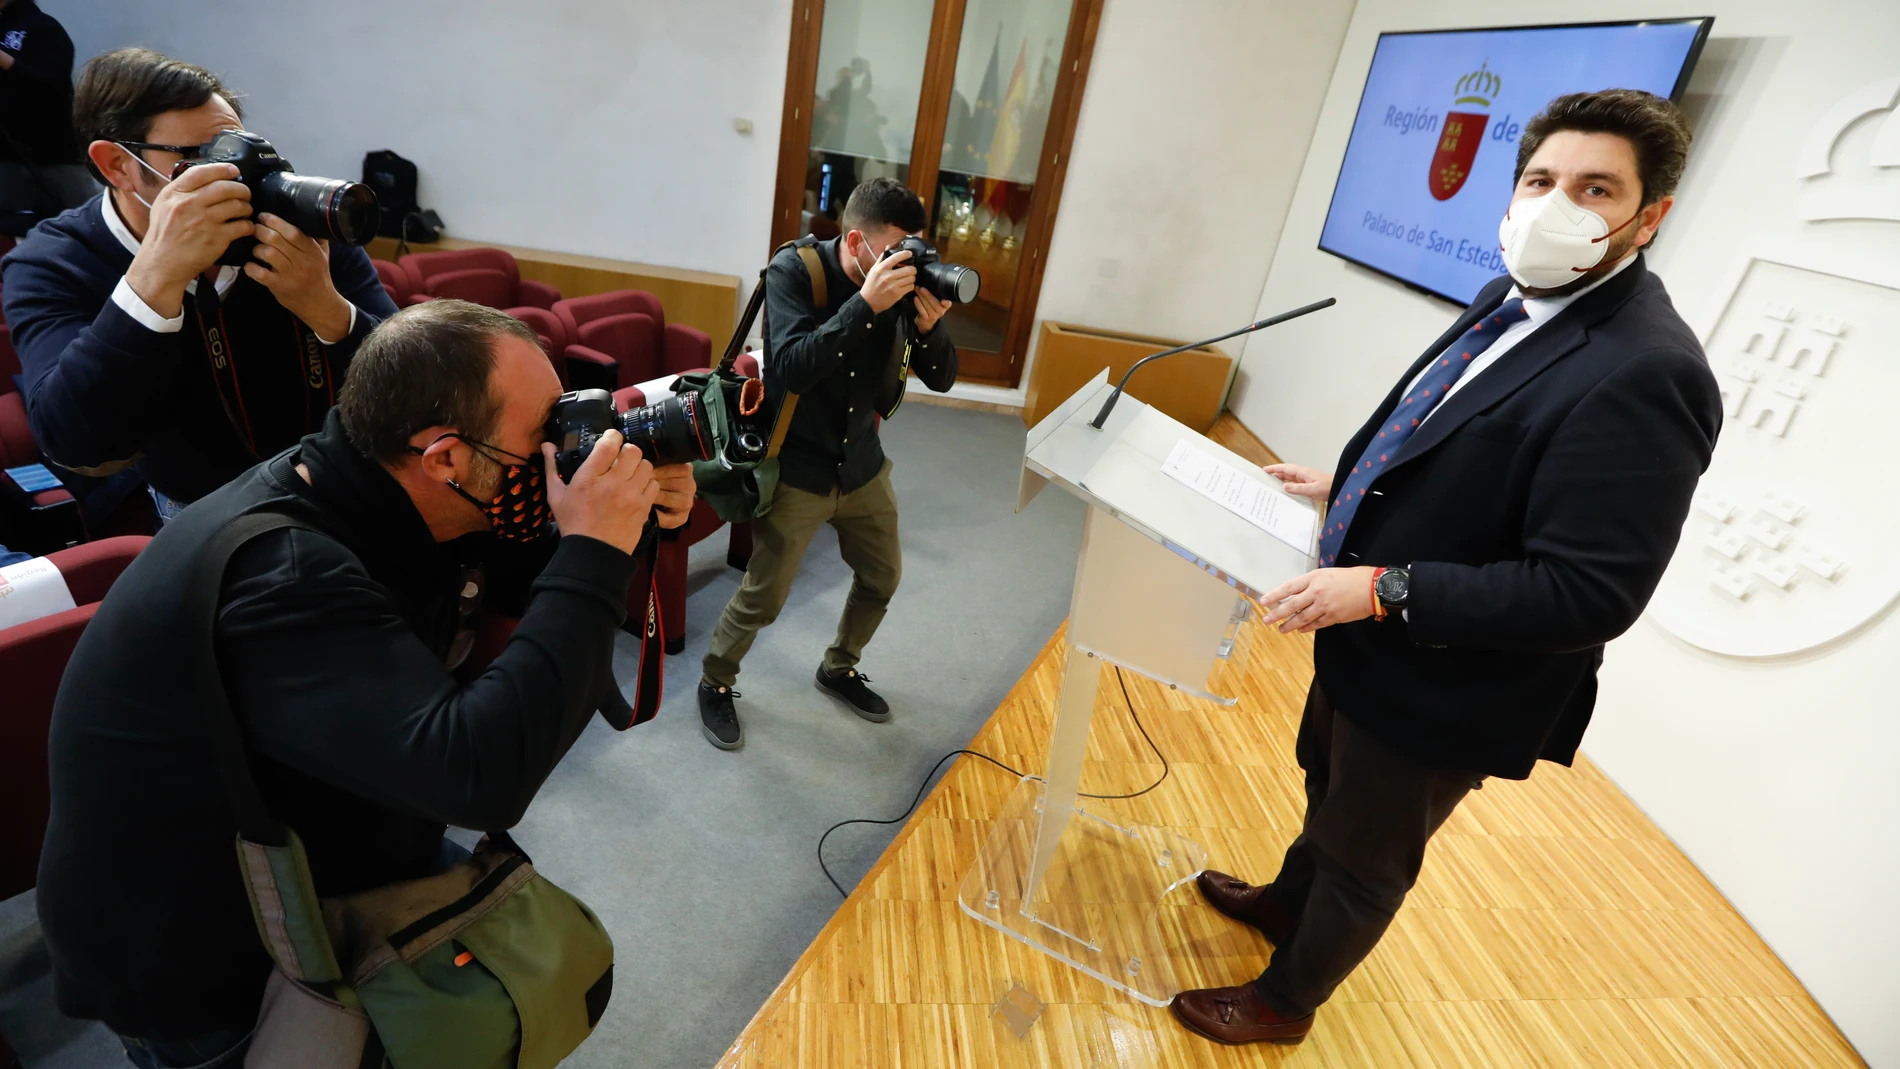 Medios de comunicación fotografían al presidente de la Región de Murcia, Fernando López Miras, durante una reunión por vía telemática de dirigentes autonómicos con el presidente del Gobierno central, en el Palacio de San Esteban